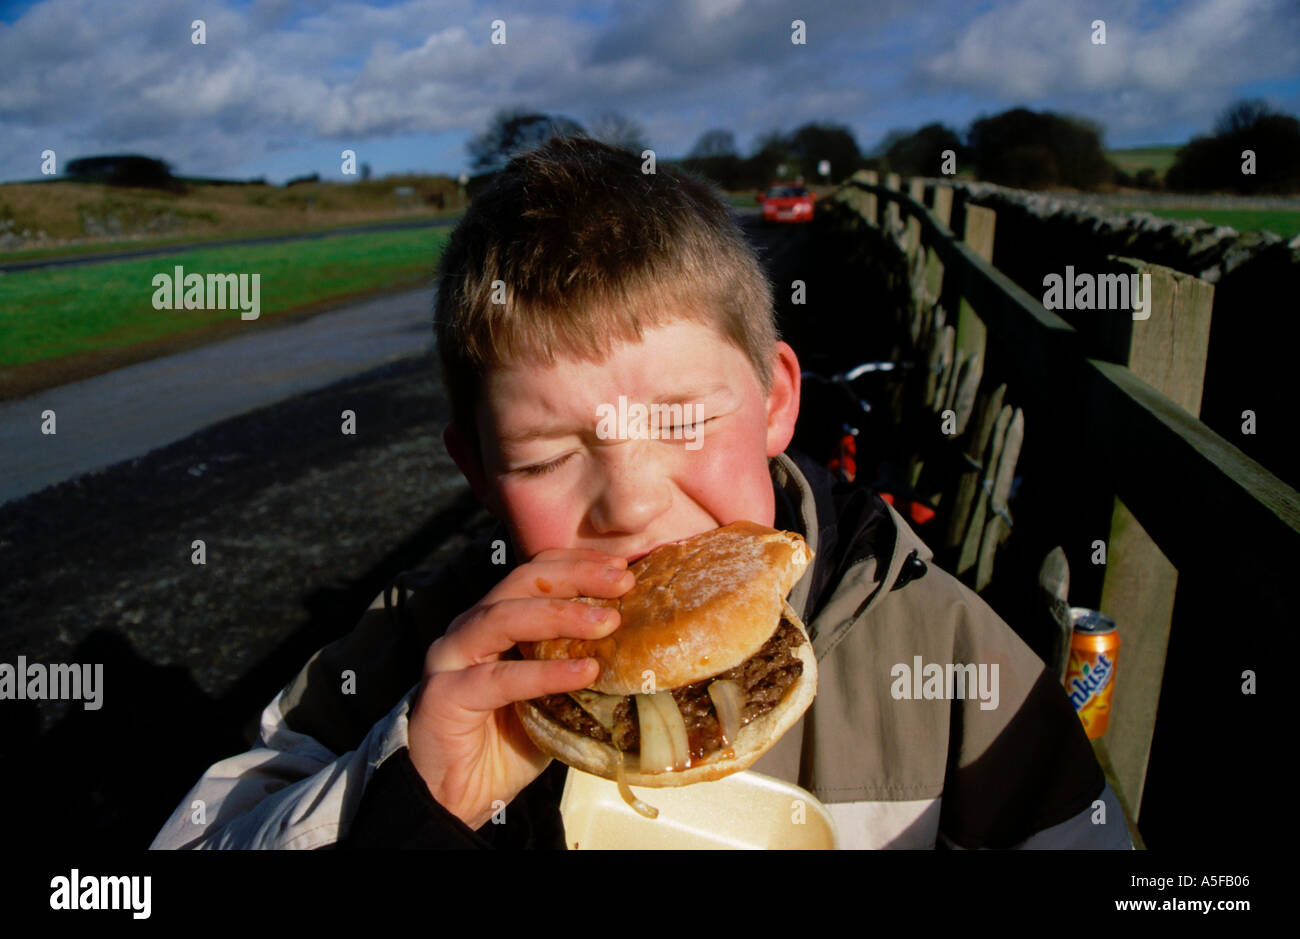 Un jeune garçon manger Burger. Mordre dans un grand burger illustrant l'obésité infantile en mangeant de la malbouffe. Banque D'Images